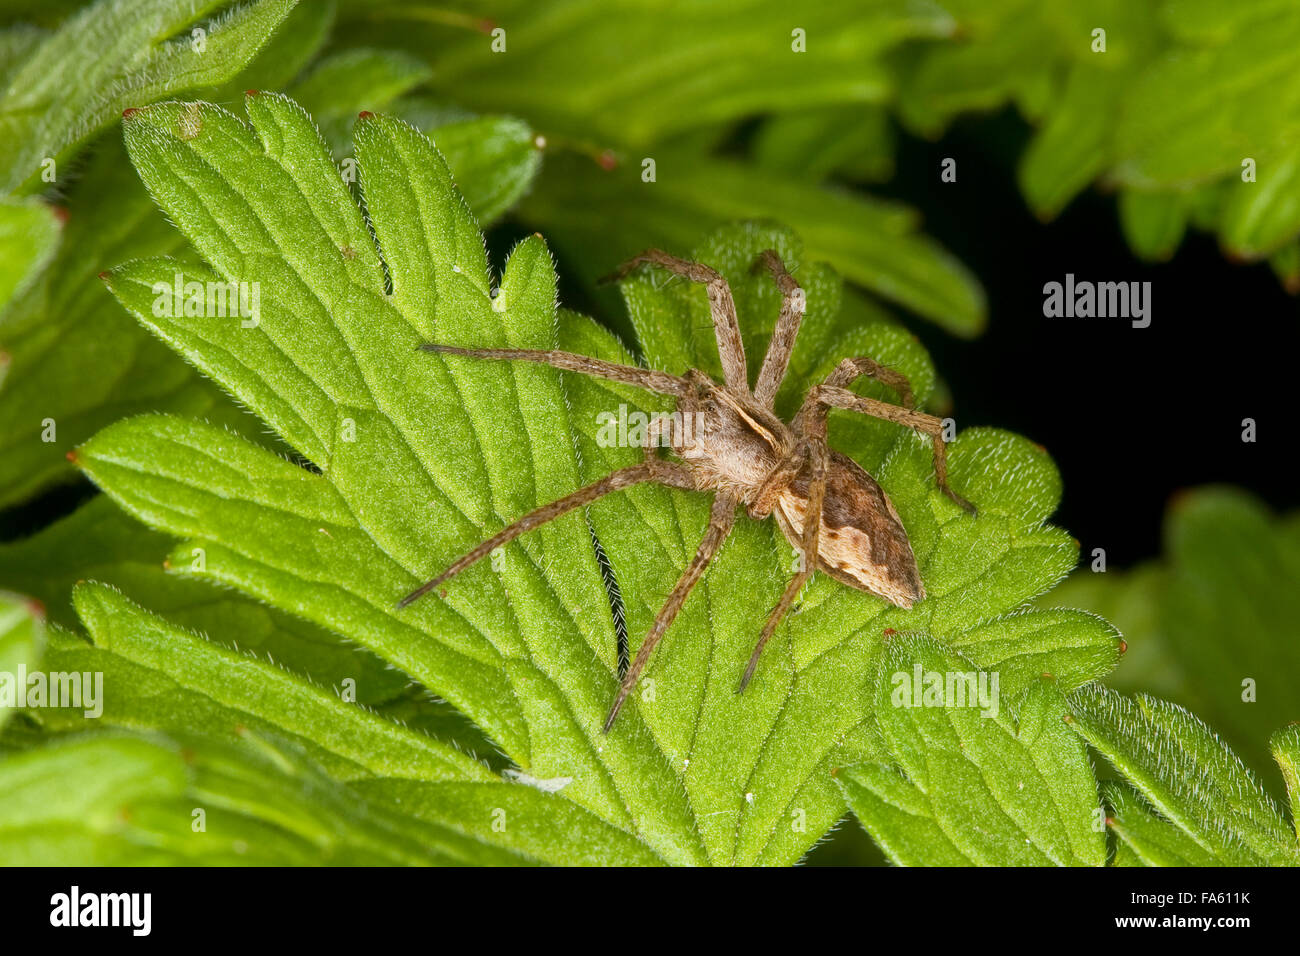 Fantastica pesca spider, vivaio spider web, Listspinne, List-Spinne, Raubspinne, Brautgeschenkspinne, Pisaura mirabilis Foto Stock